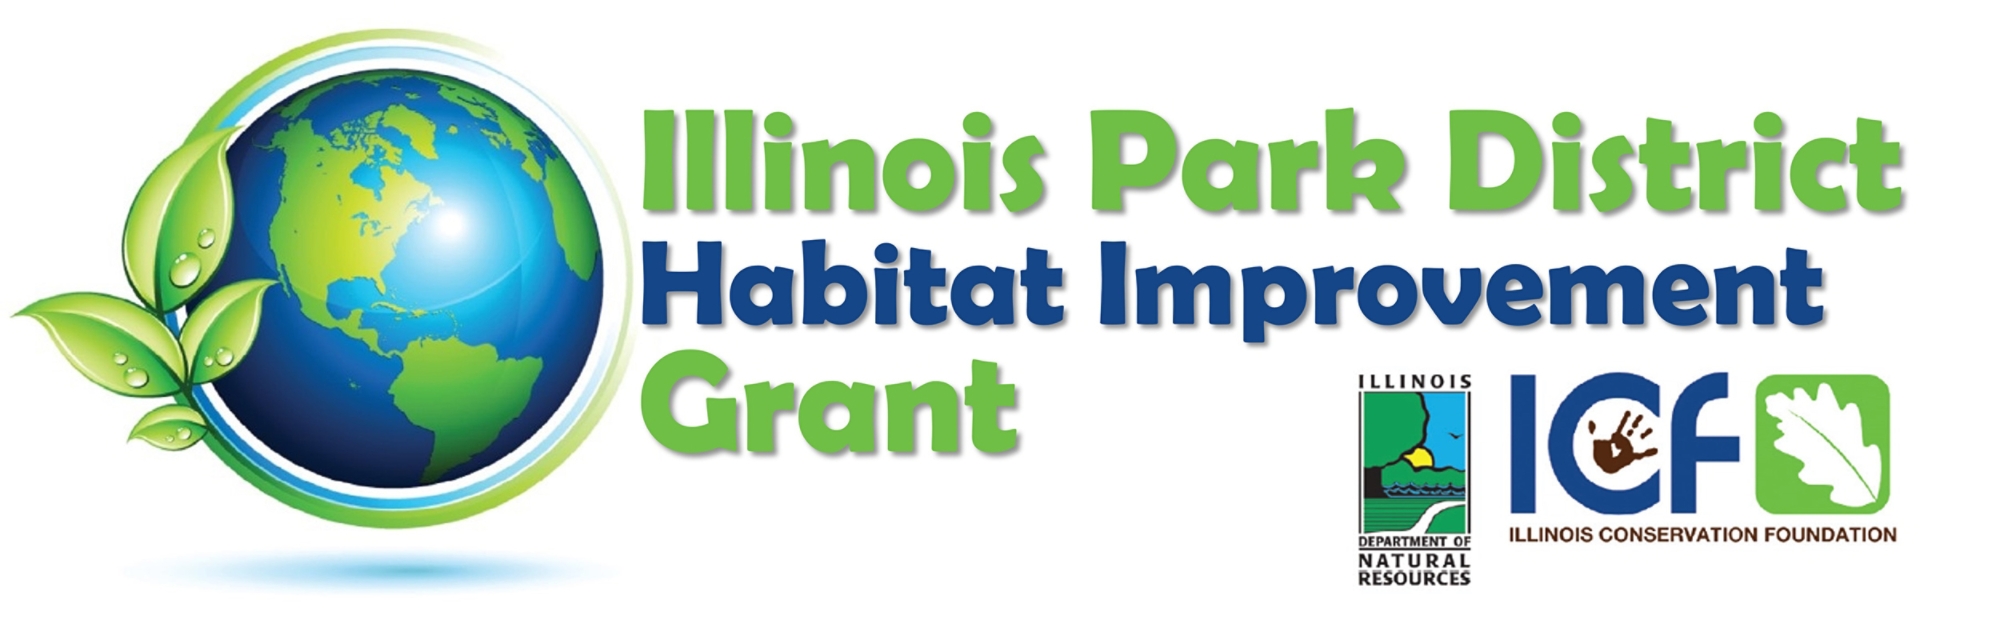 Park District Grant logo